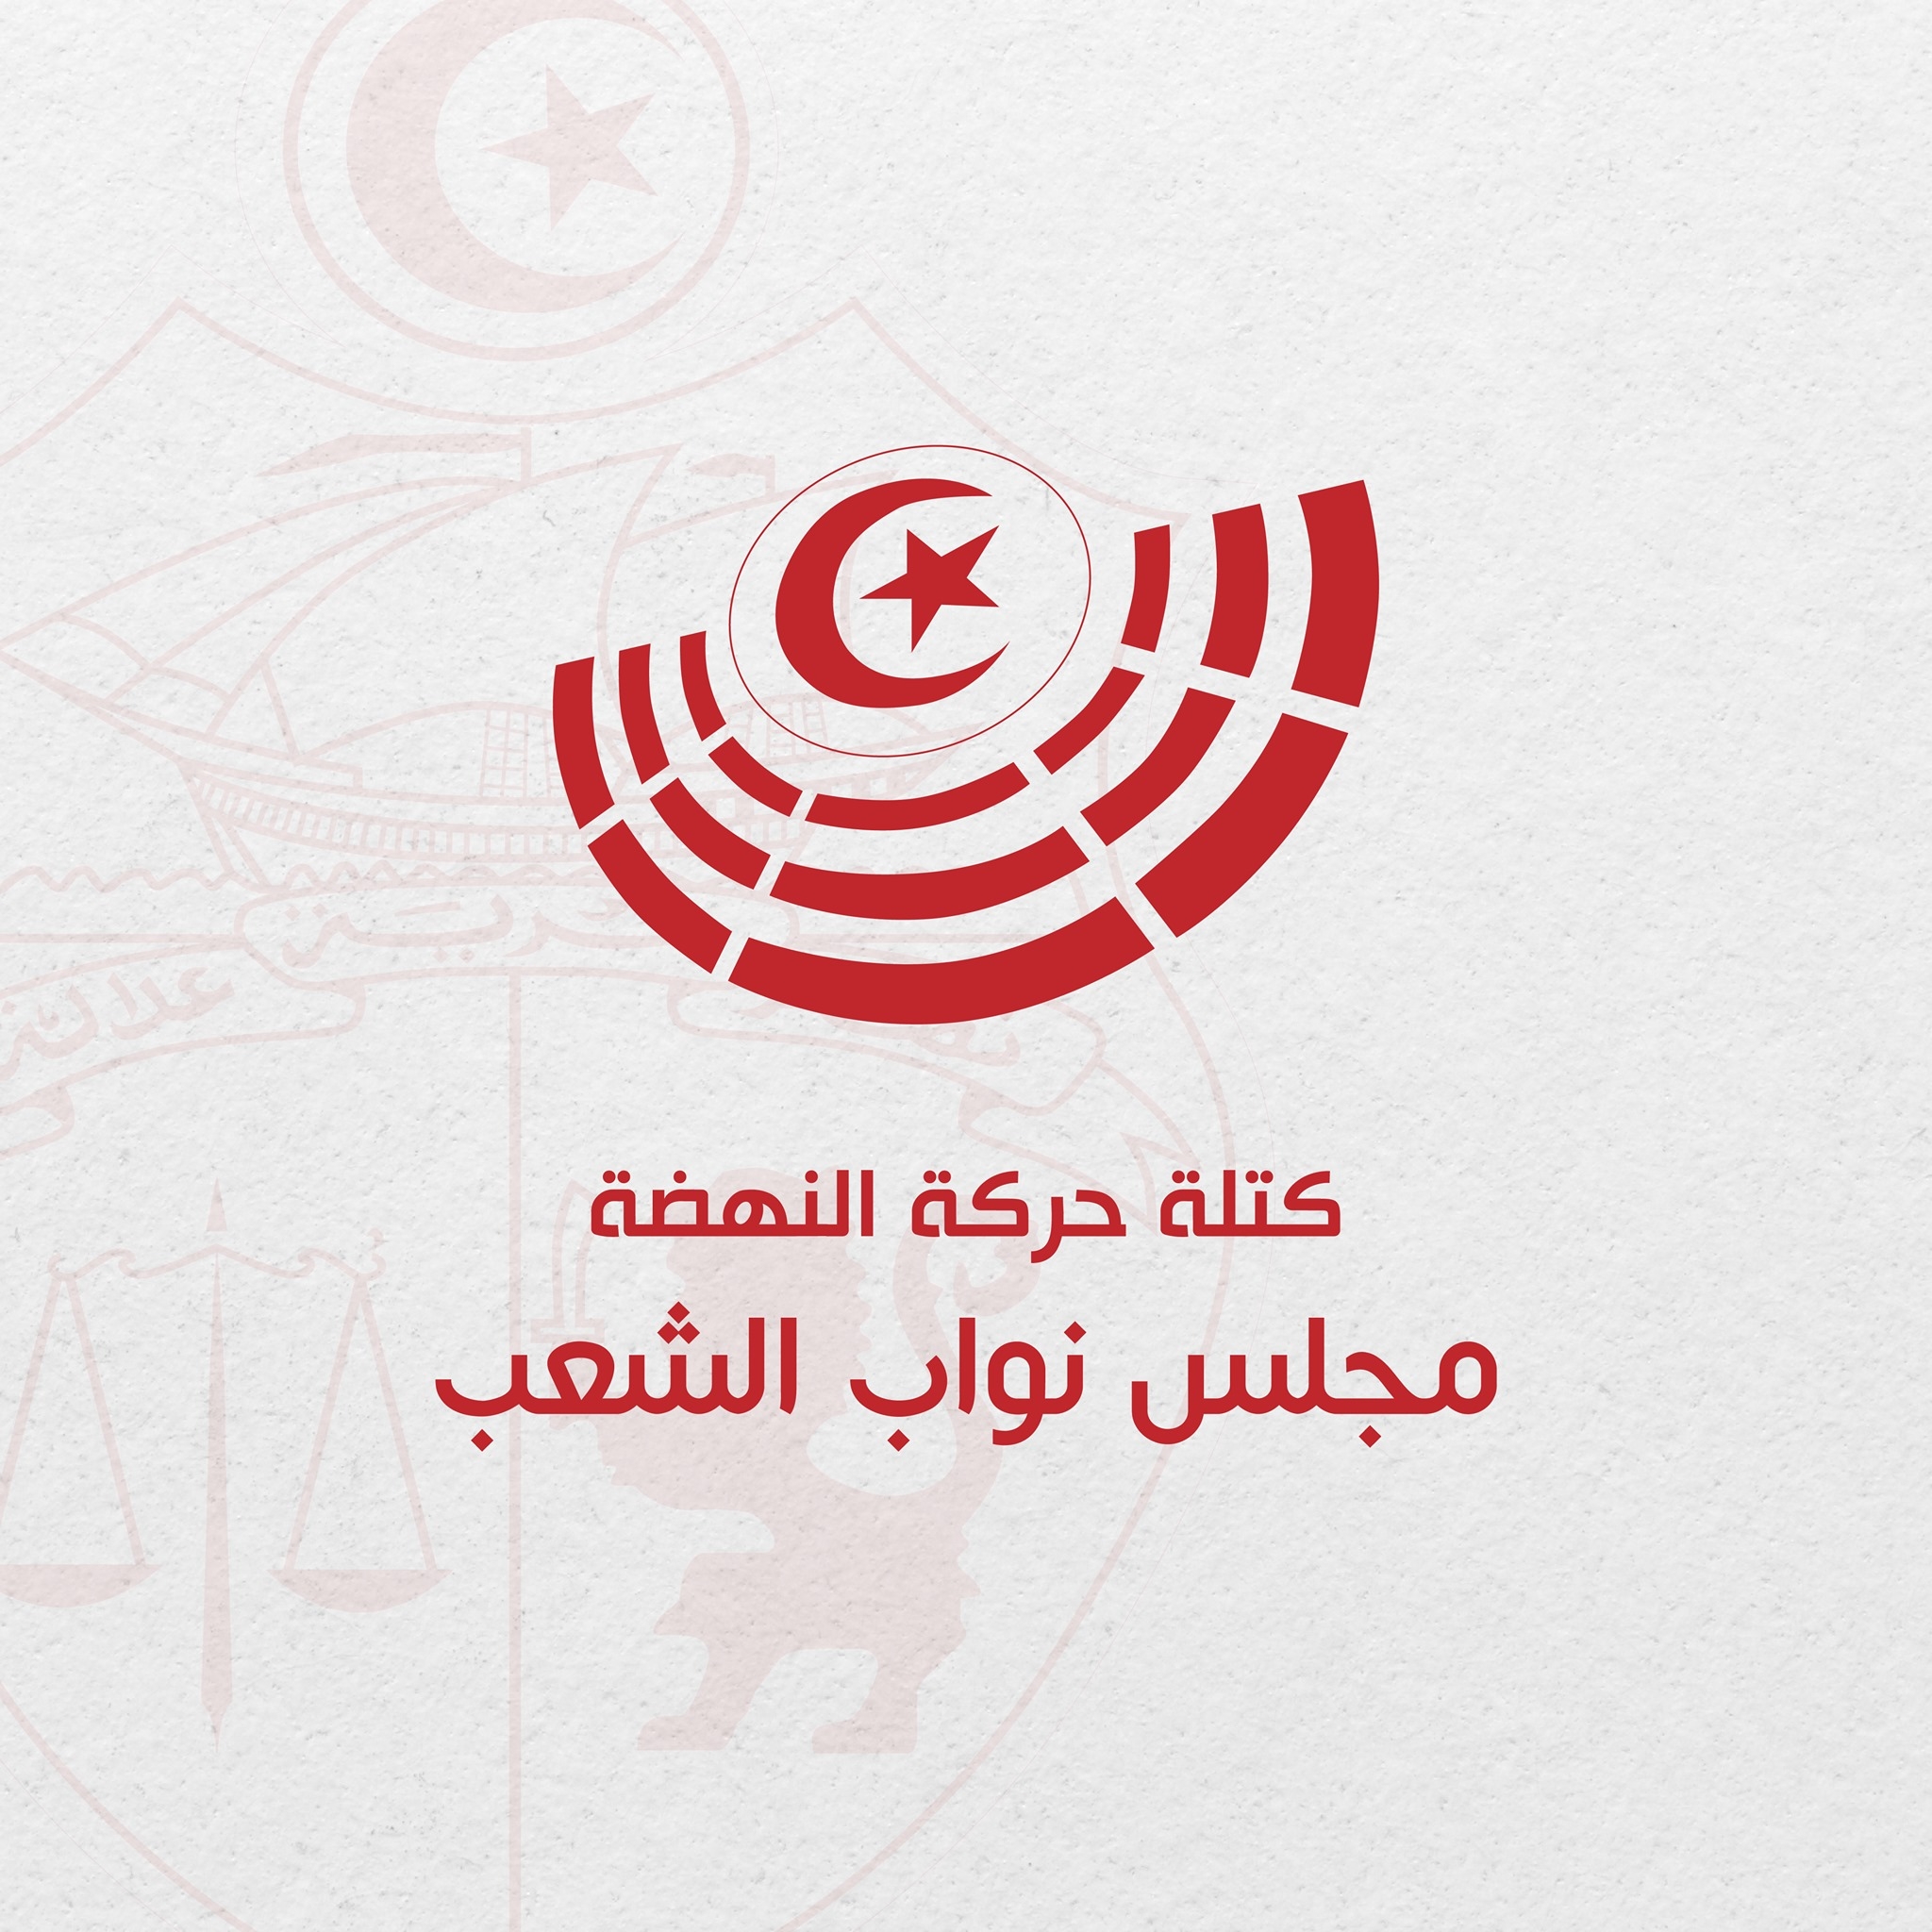 Dernière minute: Le bloc parlementaire Ennahdha appelle à la reprise des travaux du Parlement